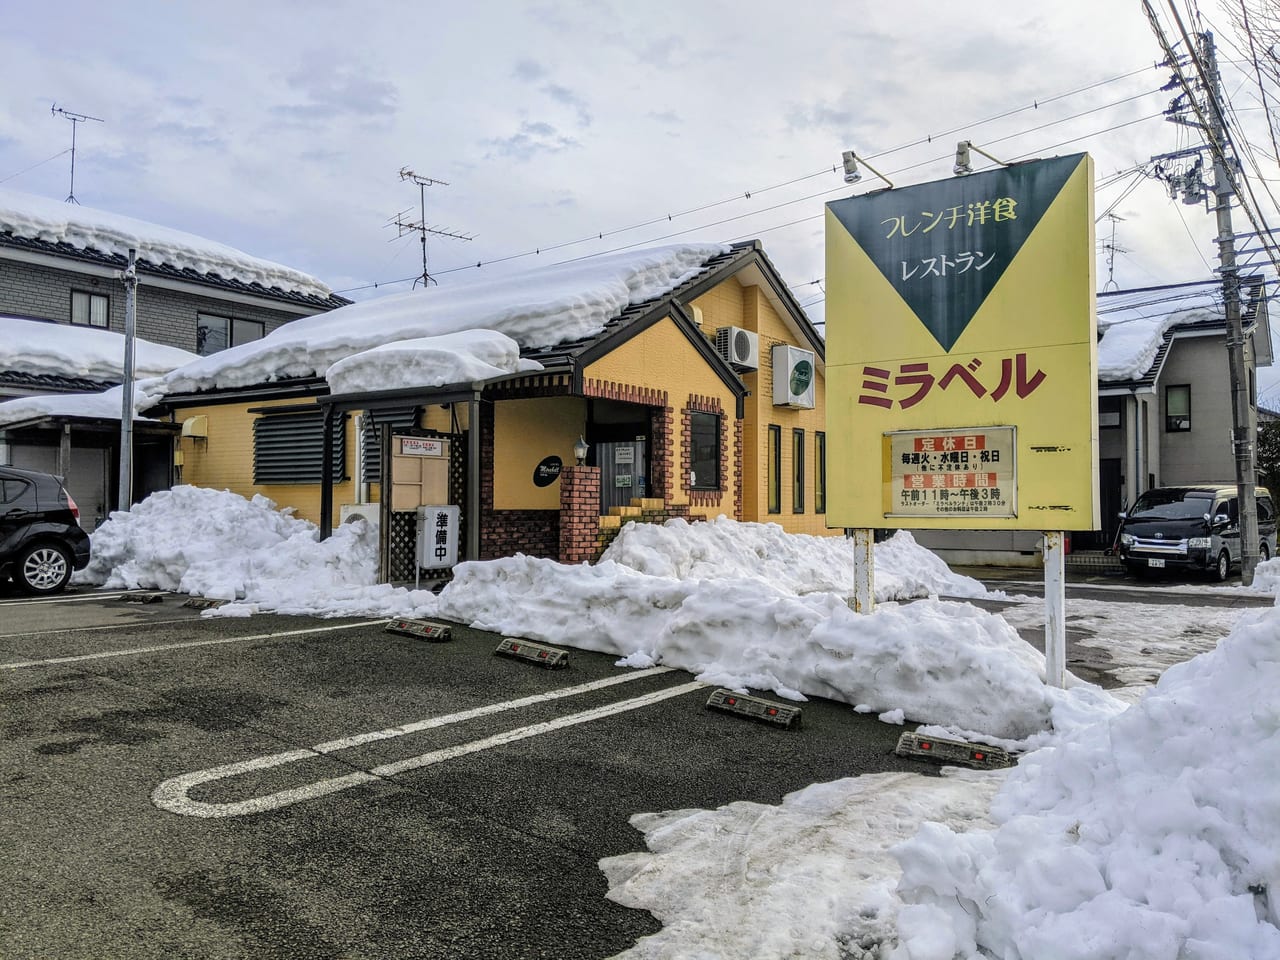 新潟市北区 柳原のフレンチ洋食店 レストラン ミラベル が3月15日 月 で閉店するそうです 号外net 新潟市北区 東区